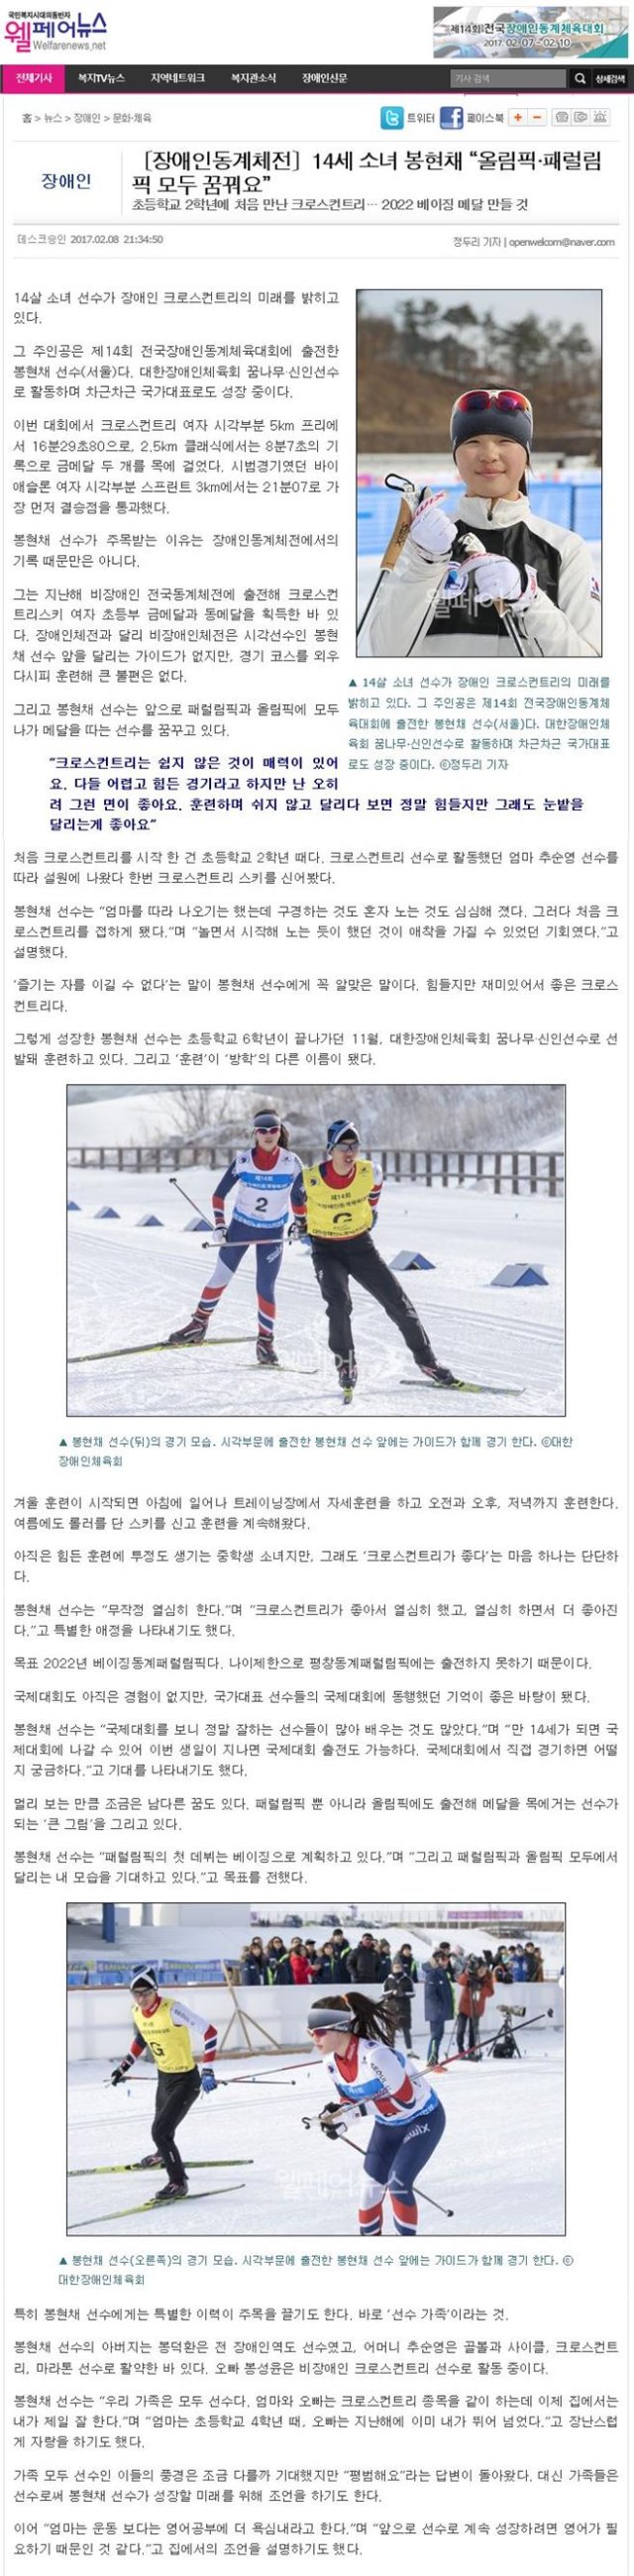 [2017.02.08] [웰페어뉴스] 14세 소녀 봉현채 올림픽 패럴림픽 모두 꿈꿔요.jpg